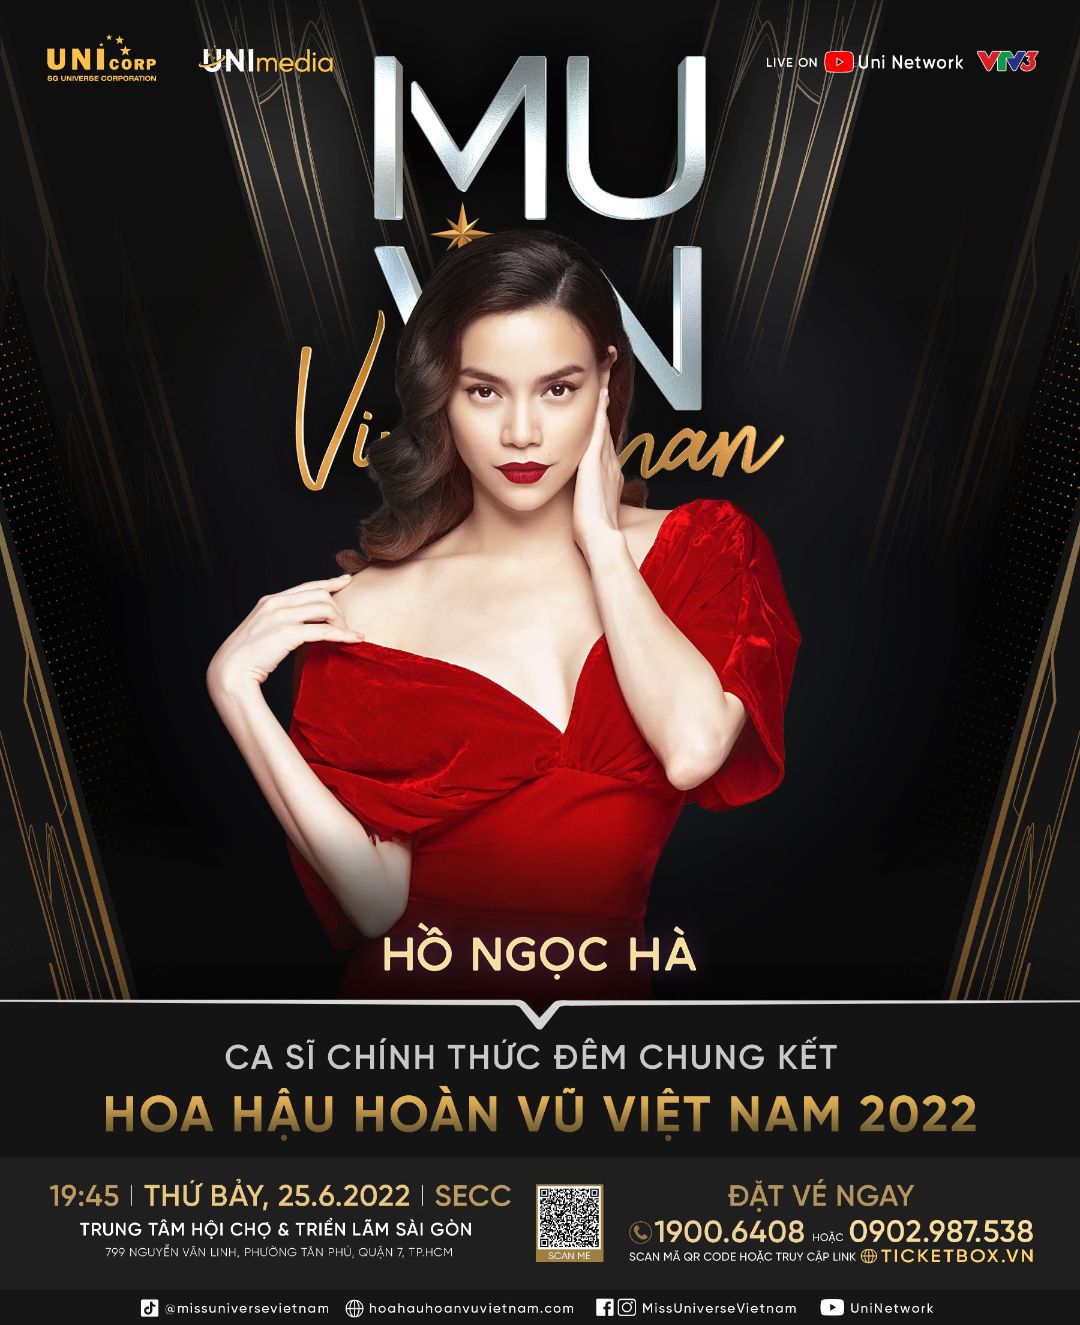 Hoa hậu Hoàn vũ Việt Nam 2022 1 Catriona Gray đến TPHCM, cầm cân nảy mực chung kết Hoa hậu Hoàn vũ Việt Nam 2022